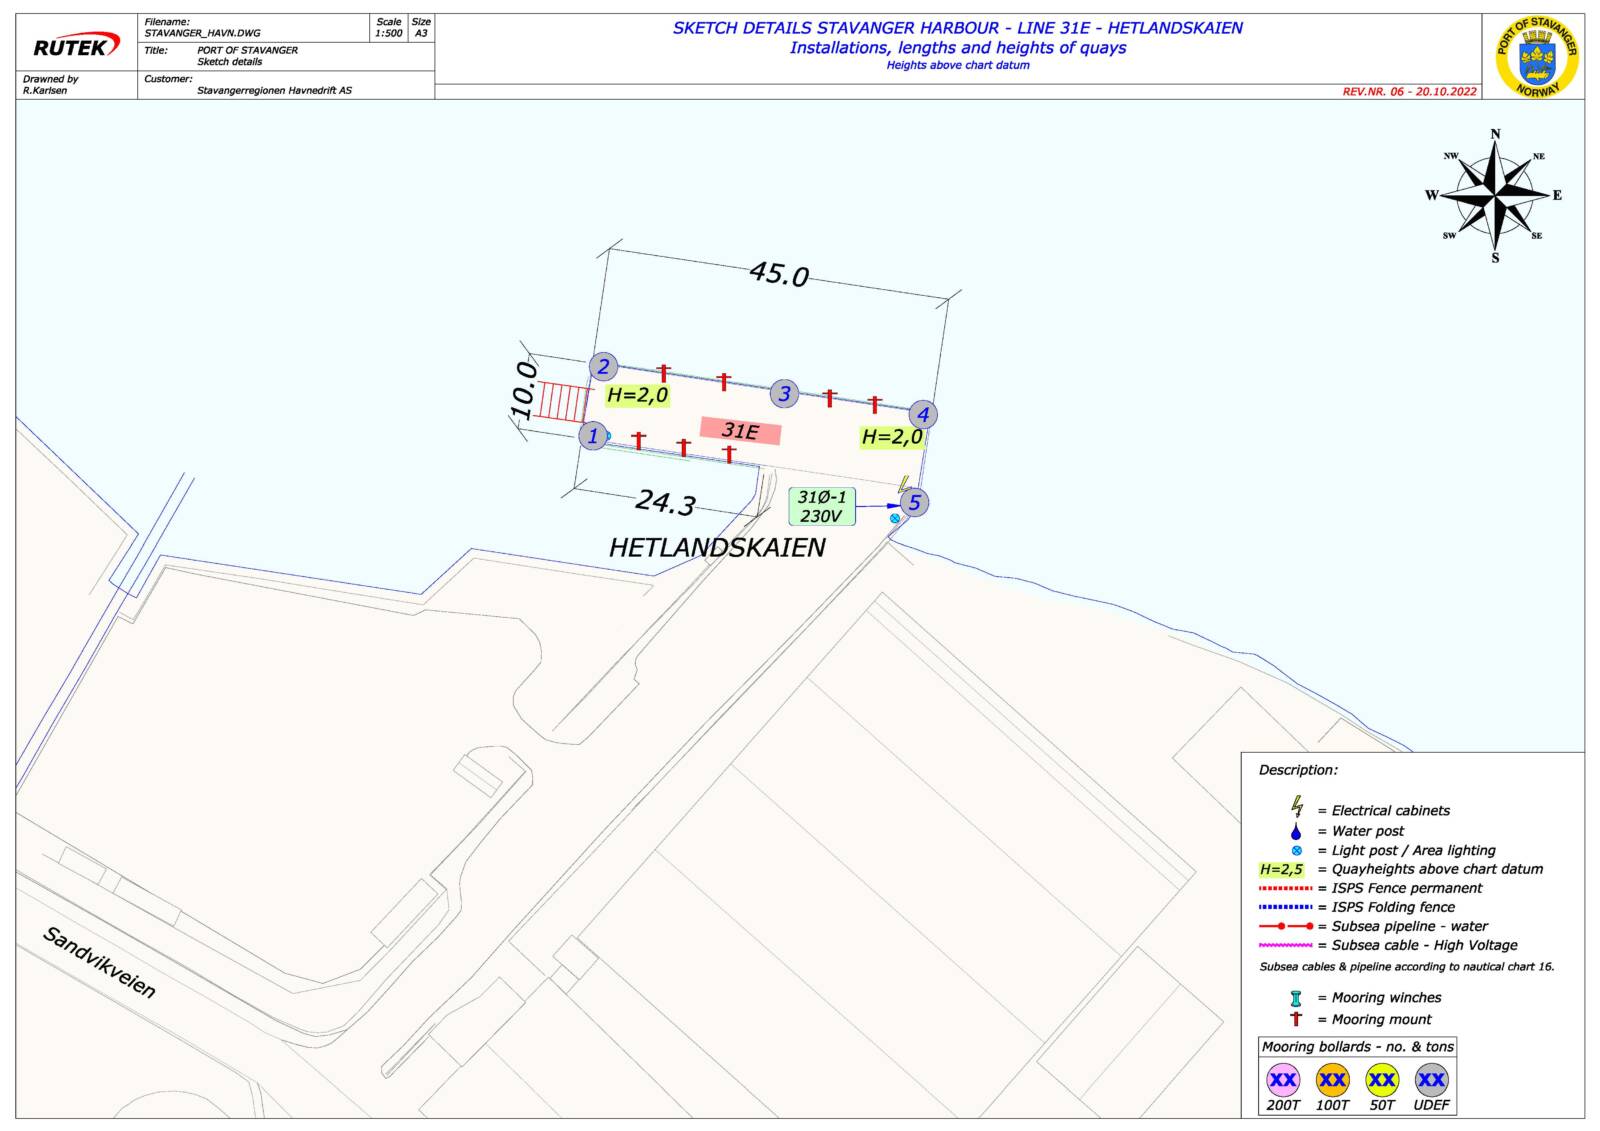 Sketch details Stavanger harbour - Mekjarvik overview map-sections